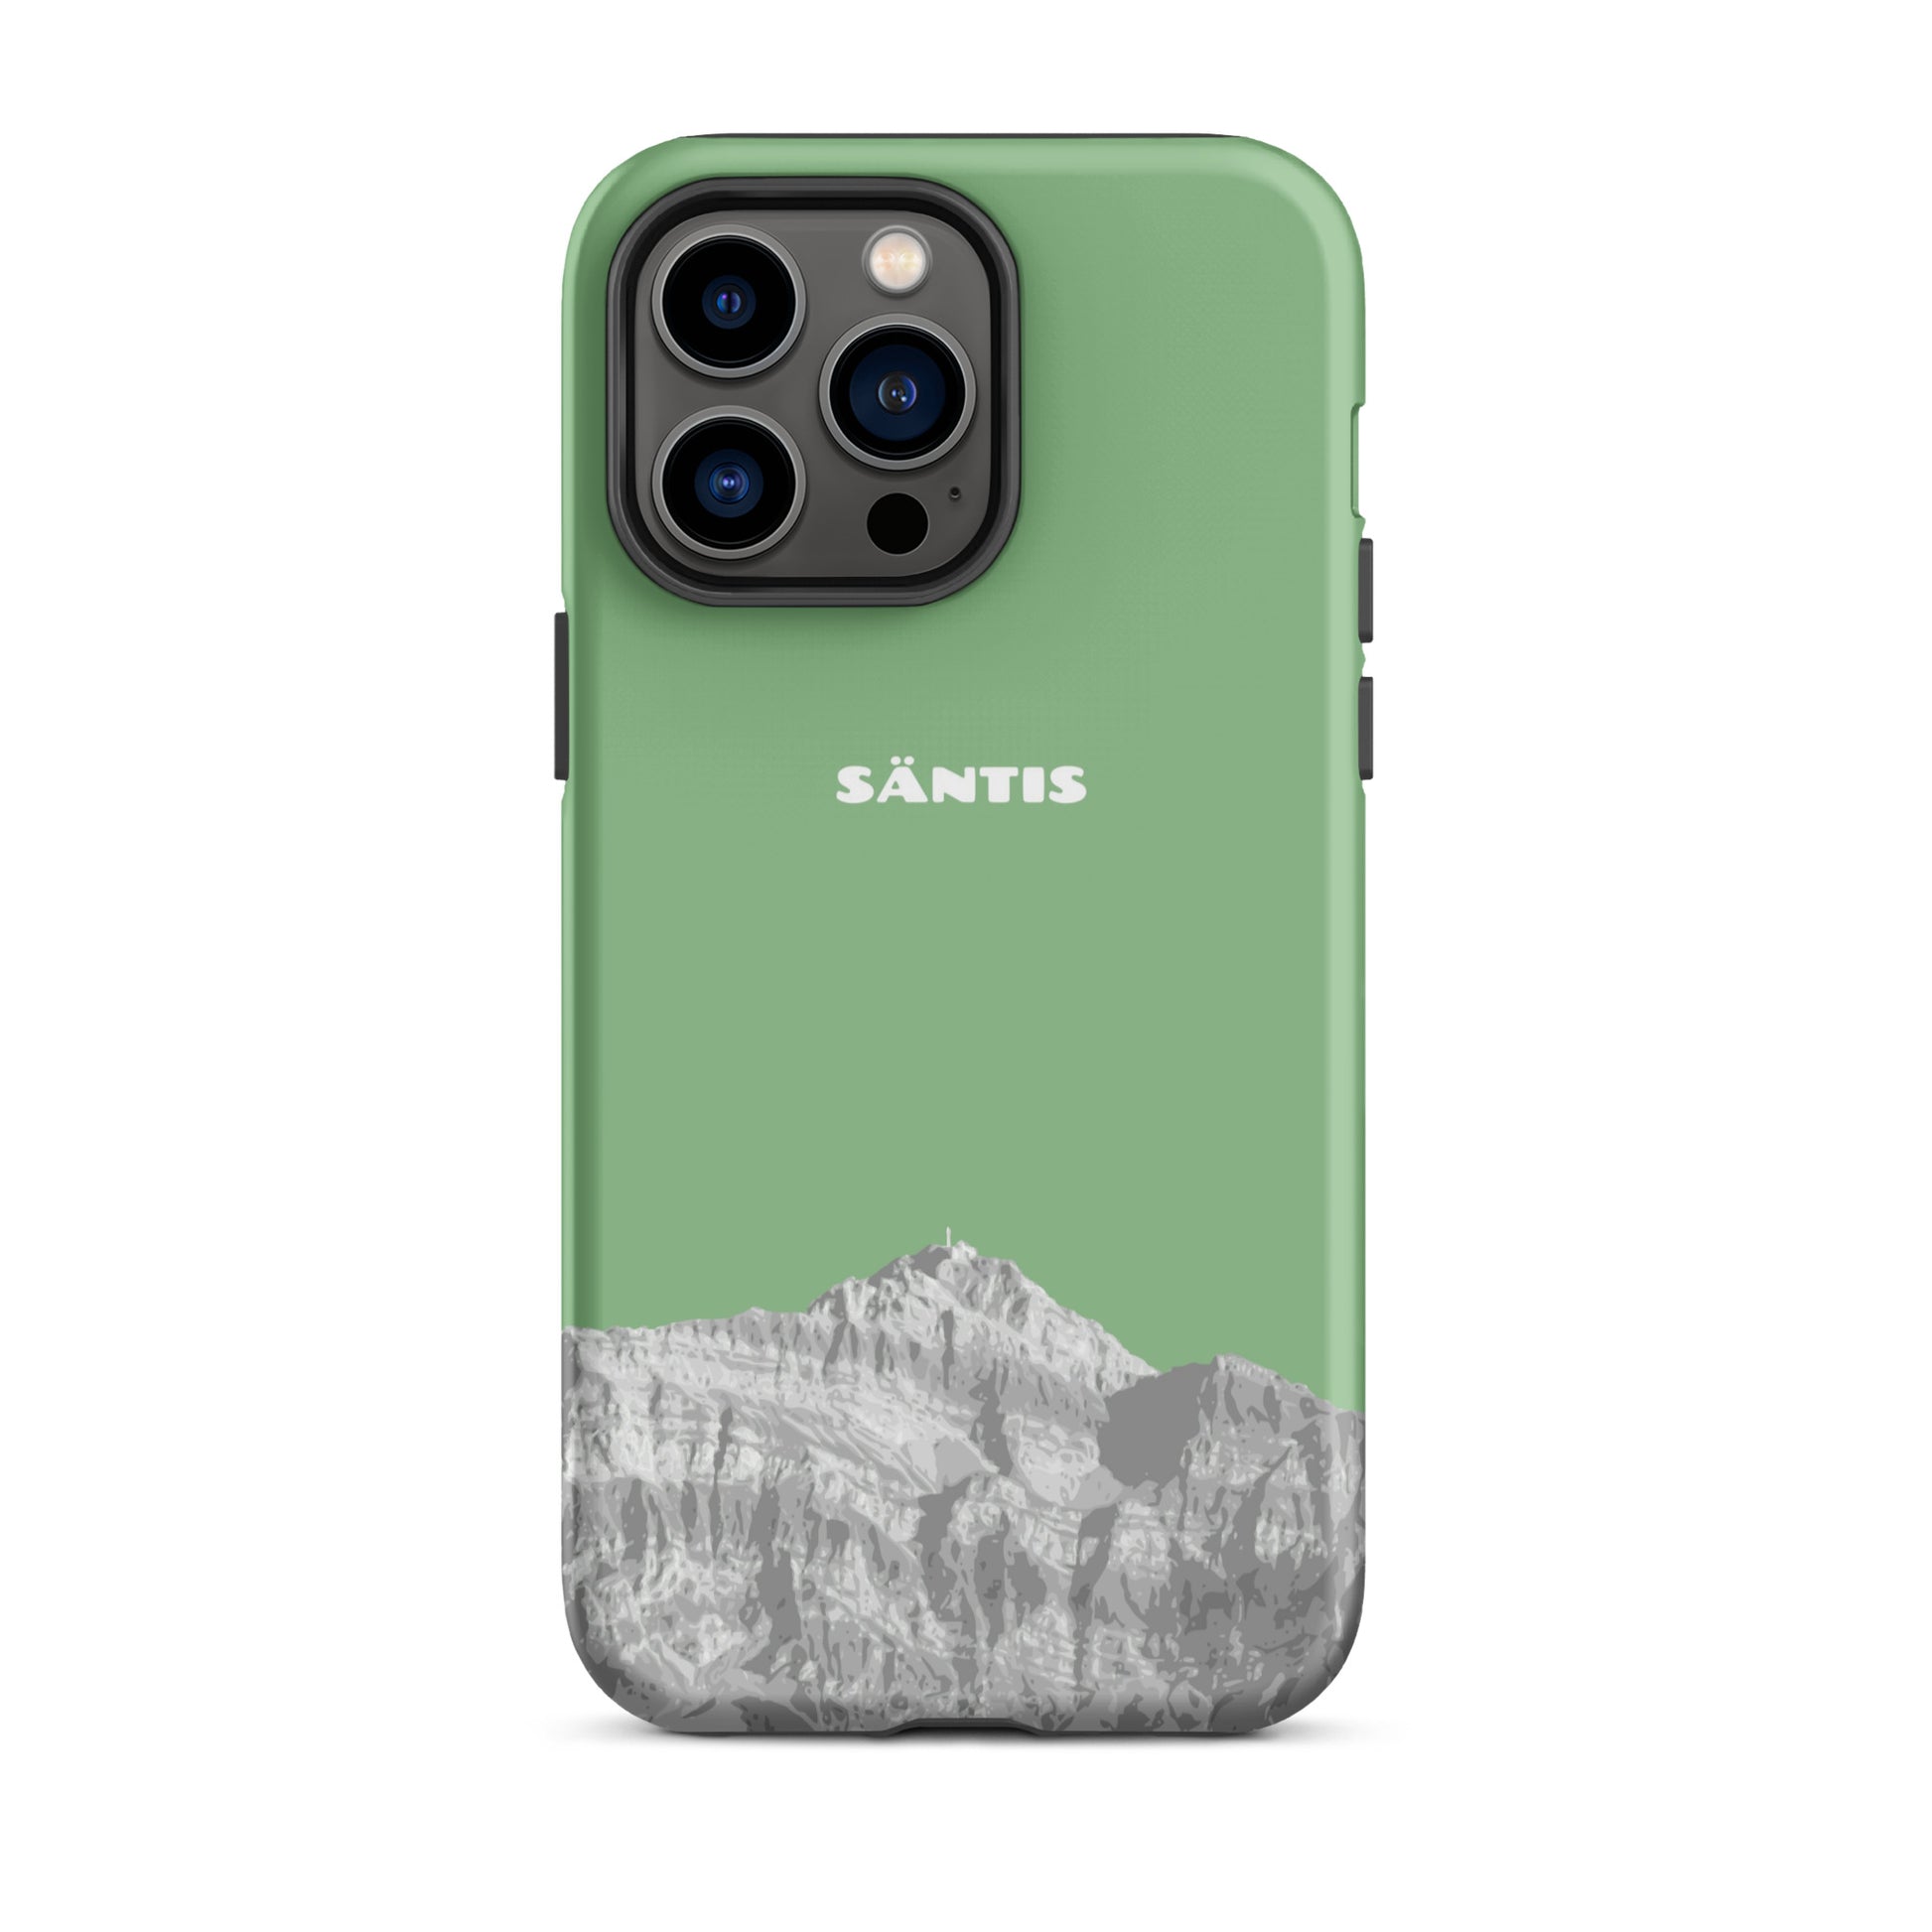 Hülle für das iPhone 14 Pro Max von Apple in der Farbe Hellgrün, dass den Säntis im Alpstein zeigt.